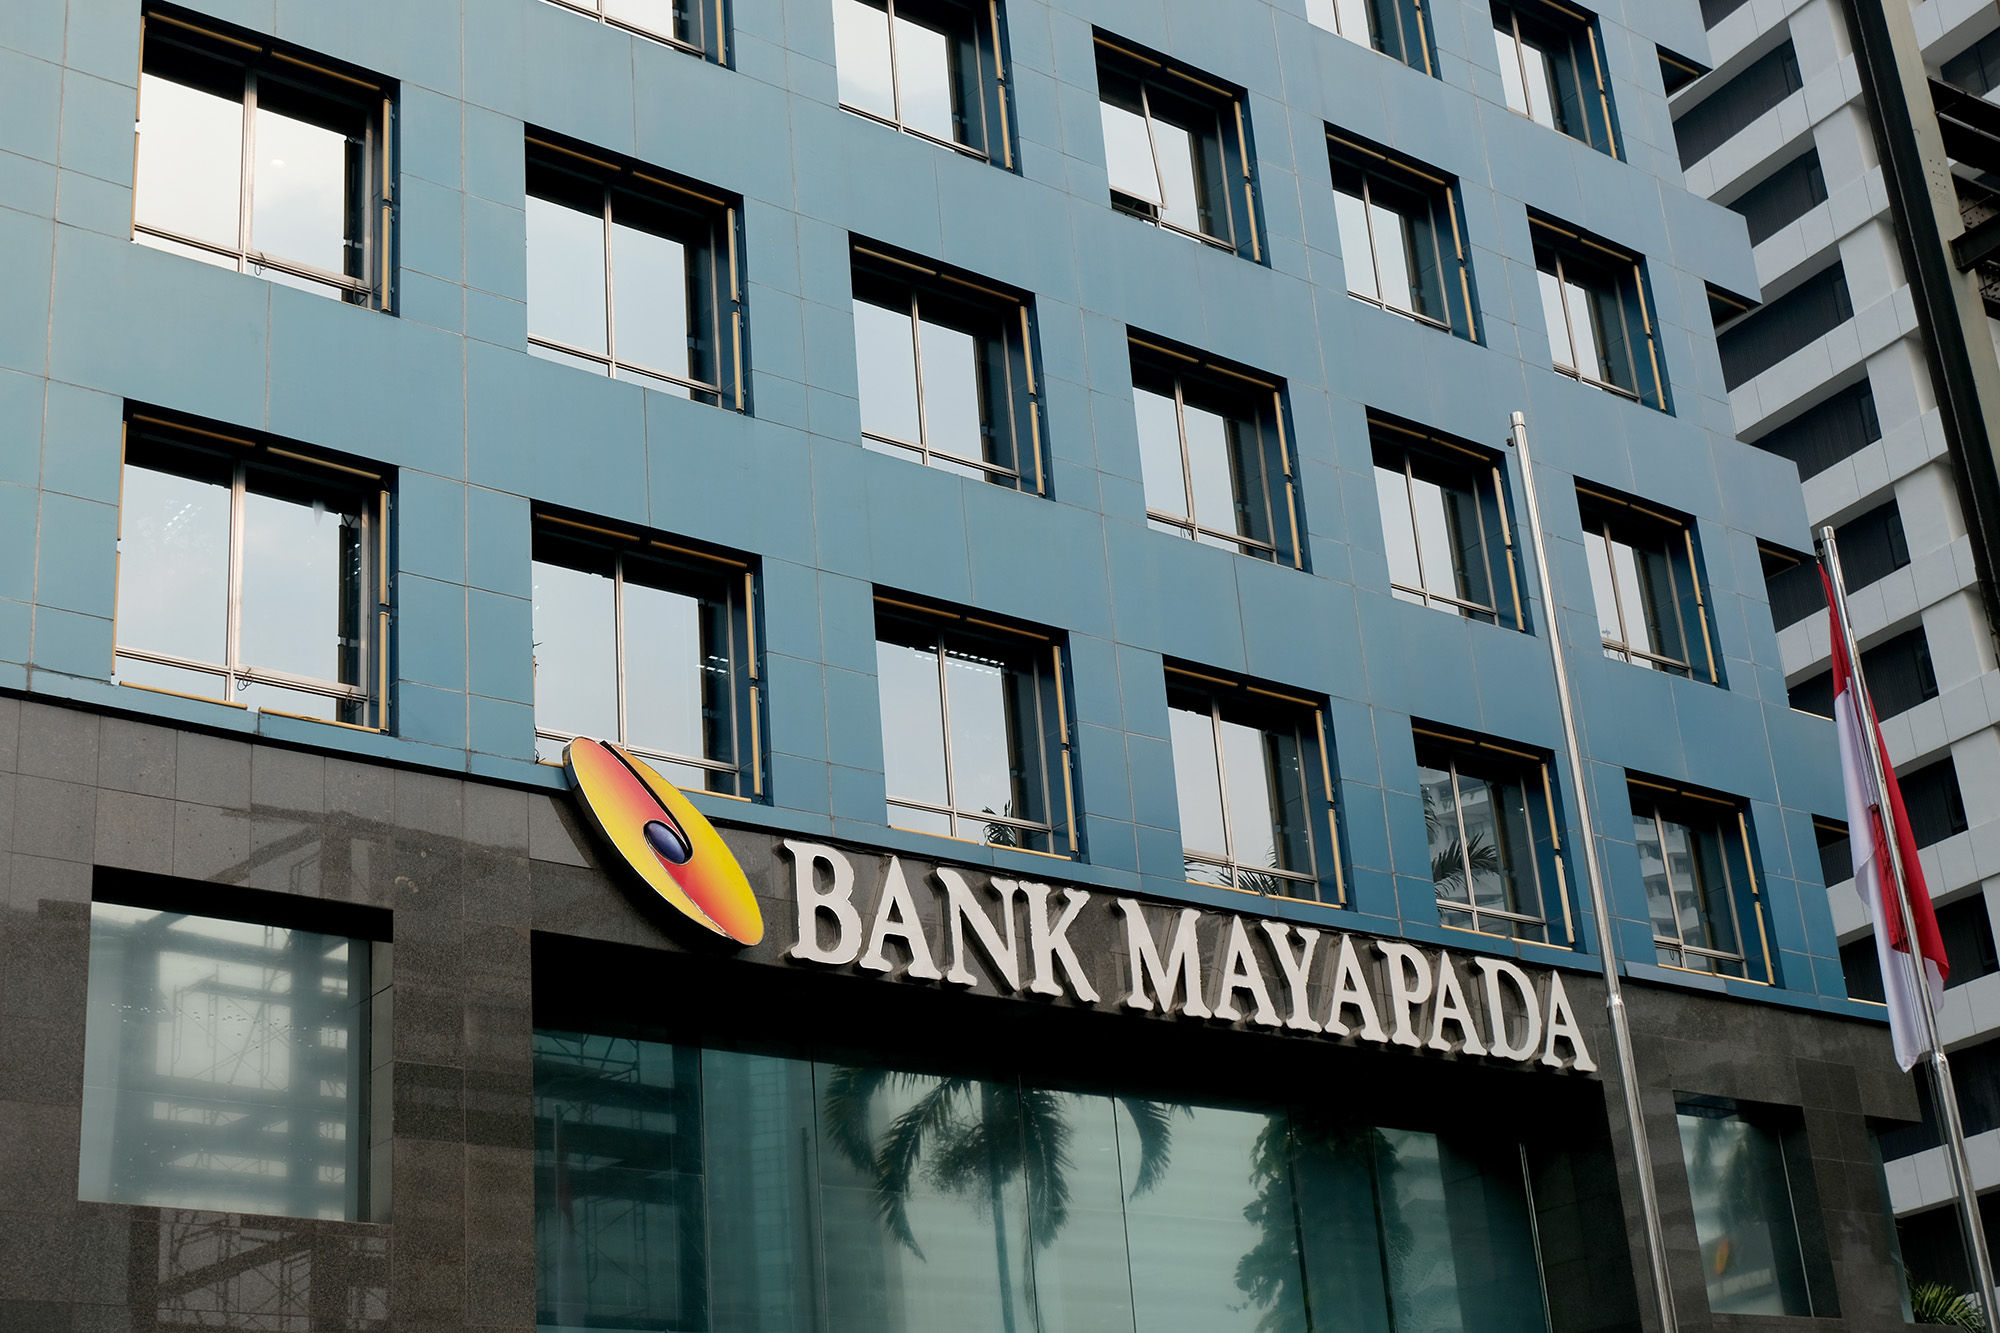 Gedung Bank Mayapada di kawasan Jalan Sudirman, Jakarta. Foto: Ismail Pohan/TrenAsia